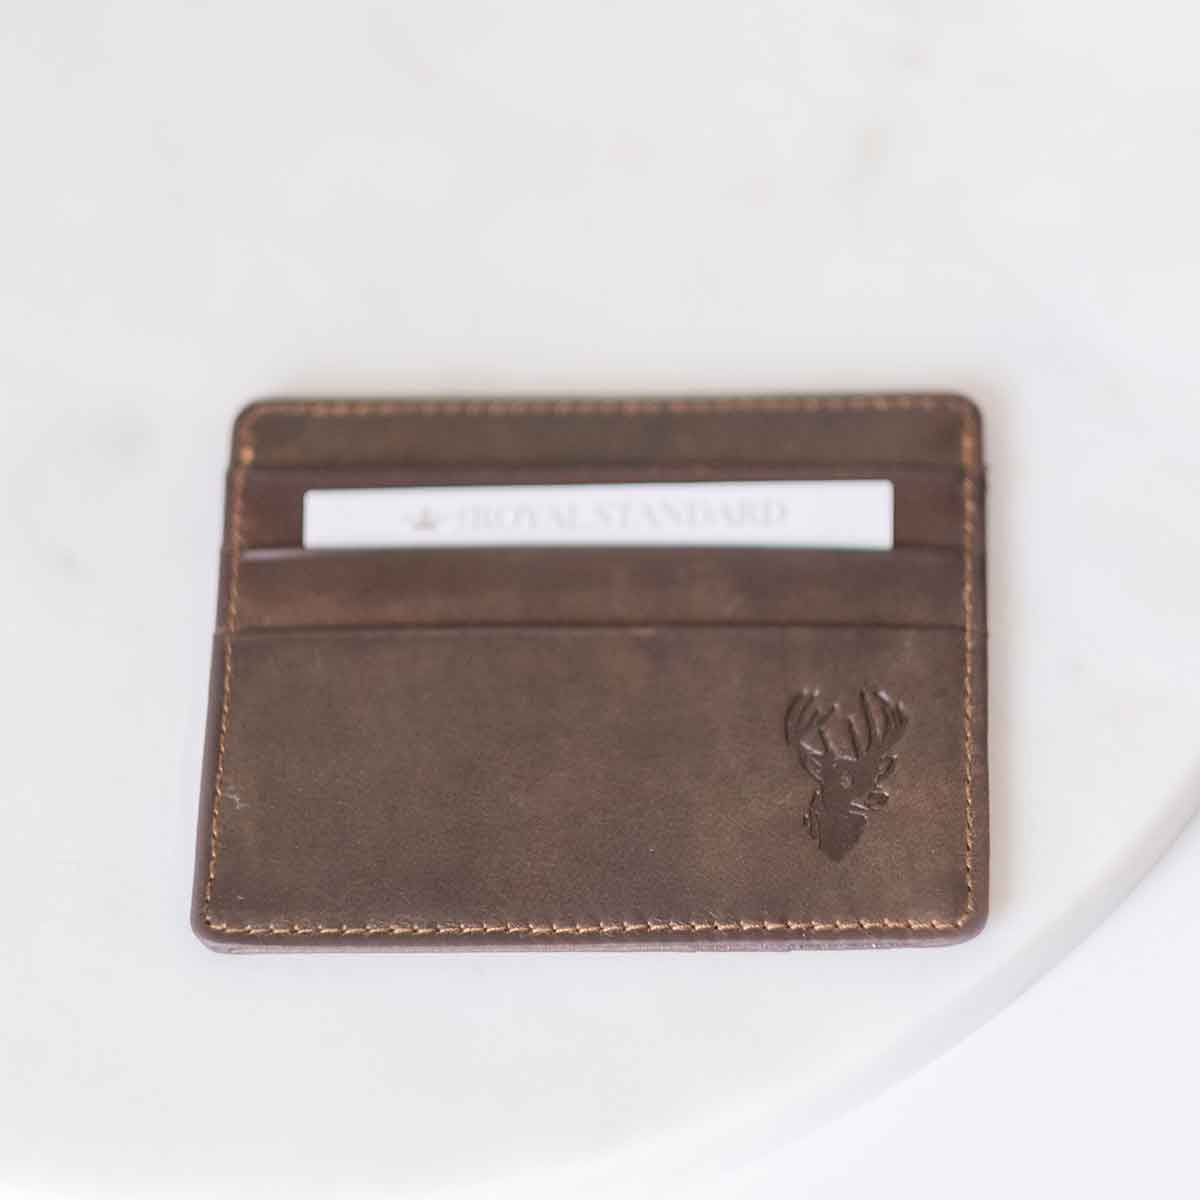 A Deer Leather Embossed Slim Wallet by The Royal Standard in dark brown with a deer head on it.